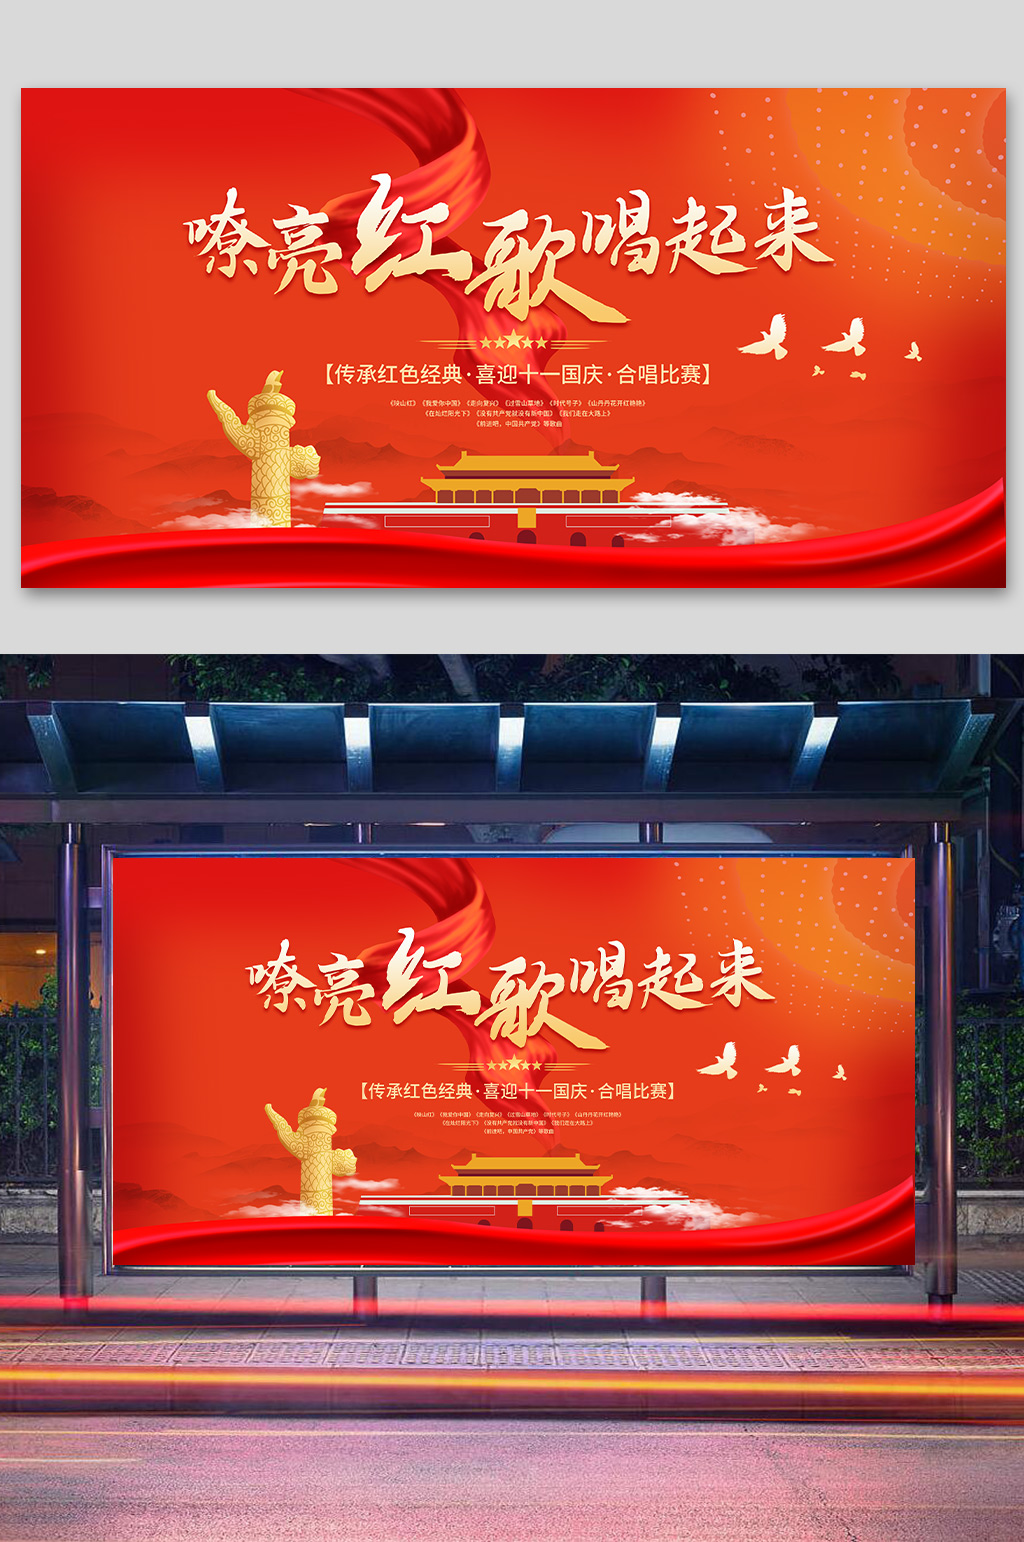 迎国庆嘹亮红歌合唱比赛 校园红歌歌唱比赛展板海报